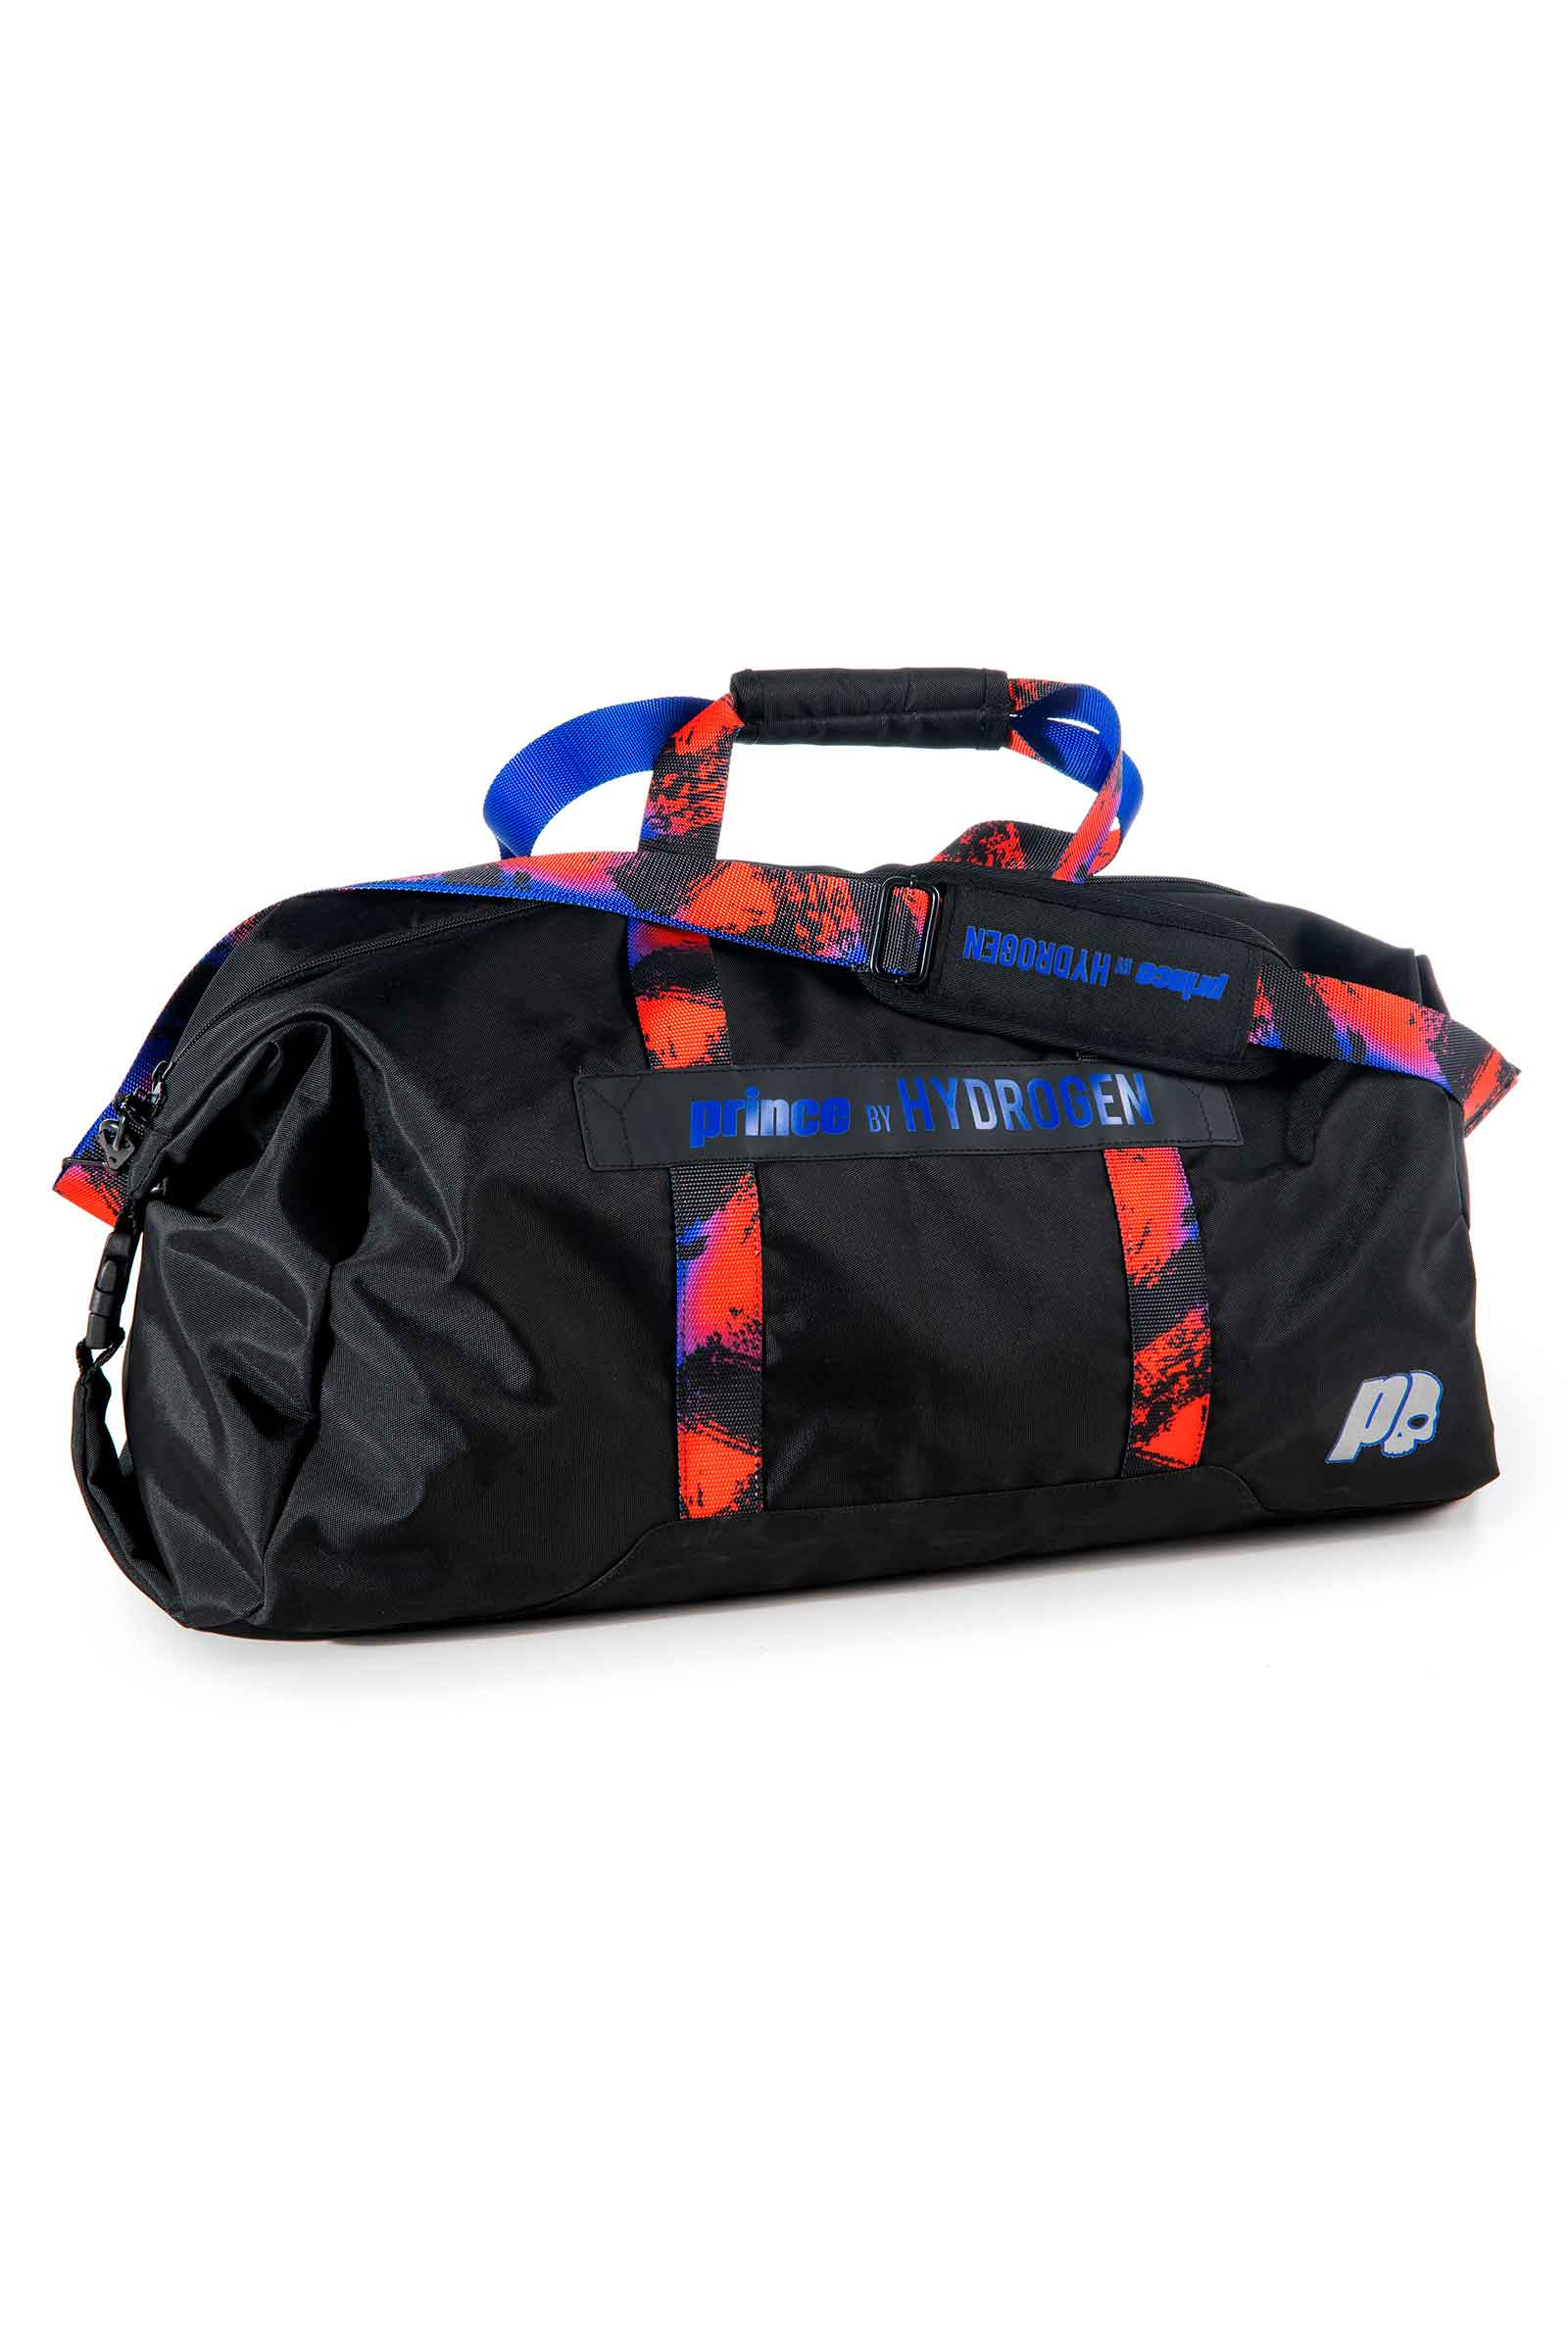 RANDOM BAG PRINCE BY HYDROGEN - Accessori - Abbigliamento sportivo | Hydrogen